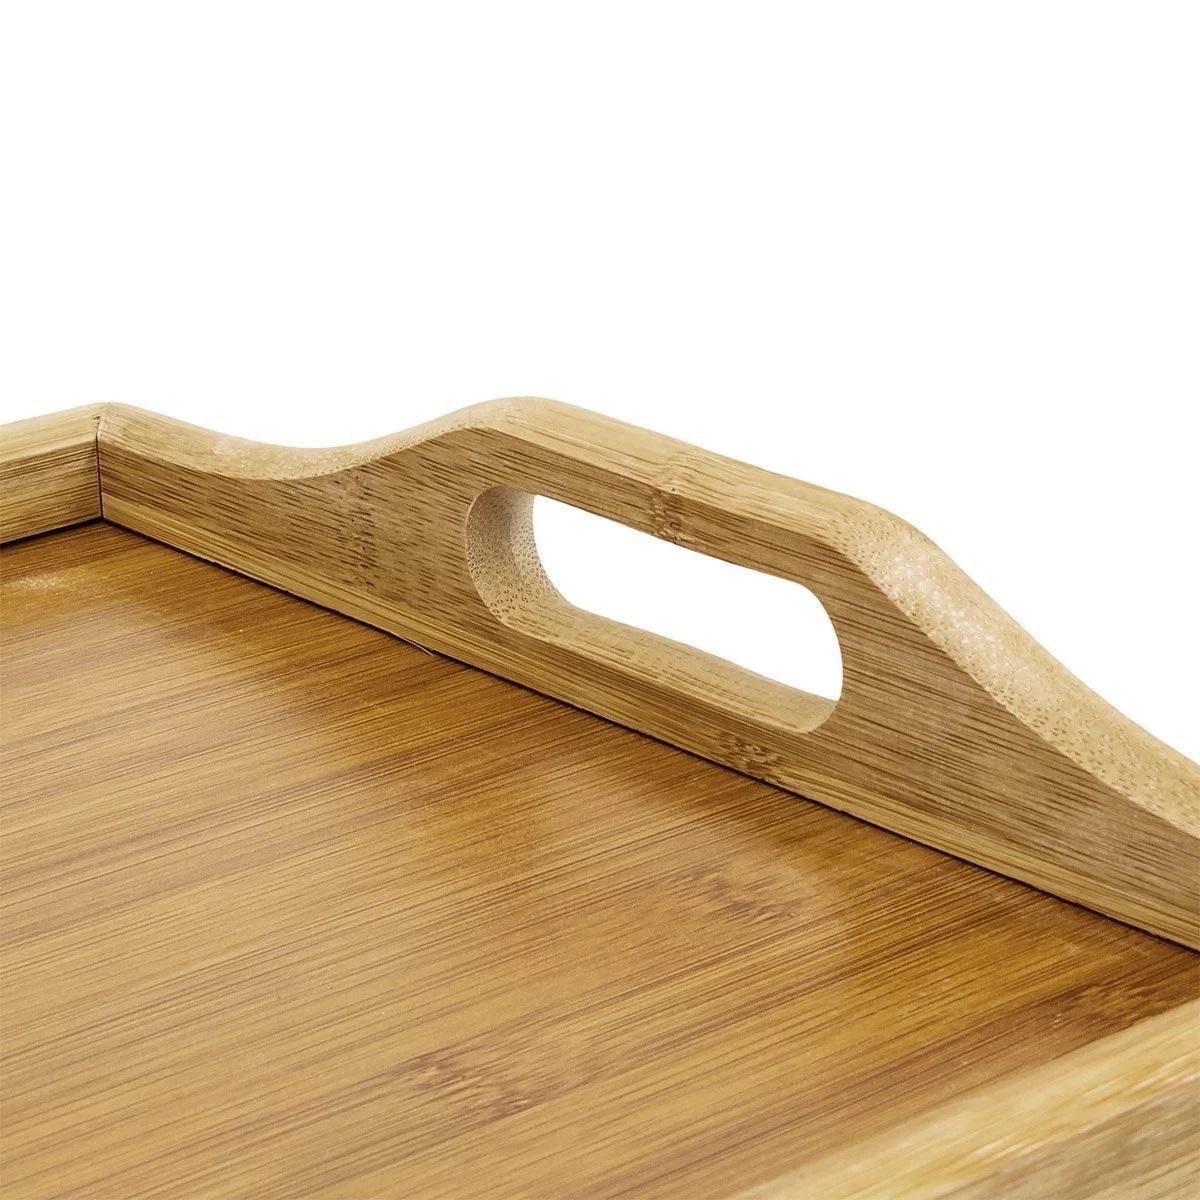 Фото 1 Бамбуковый столик для завтрака с ручками, накроватный поднос со складными ножками UFT TB01